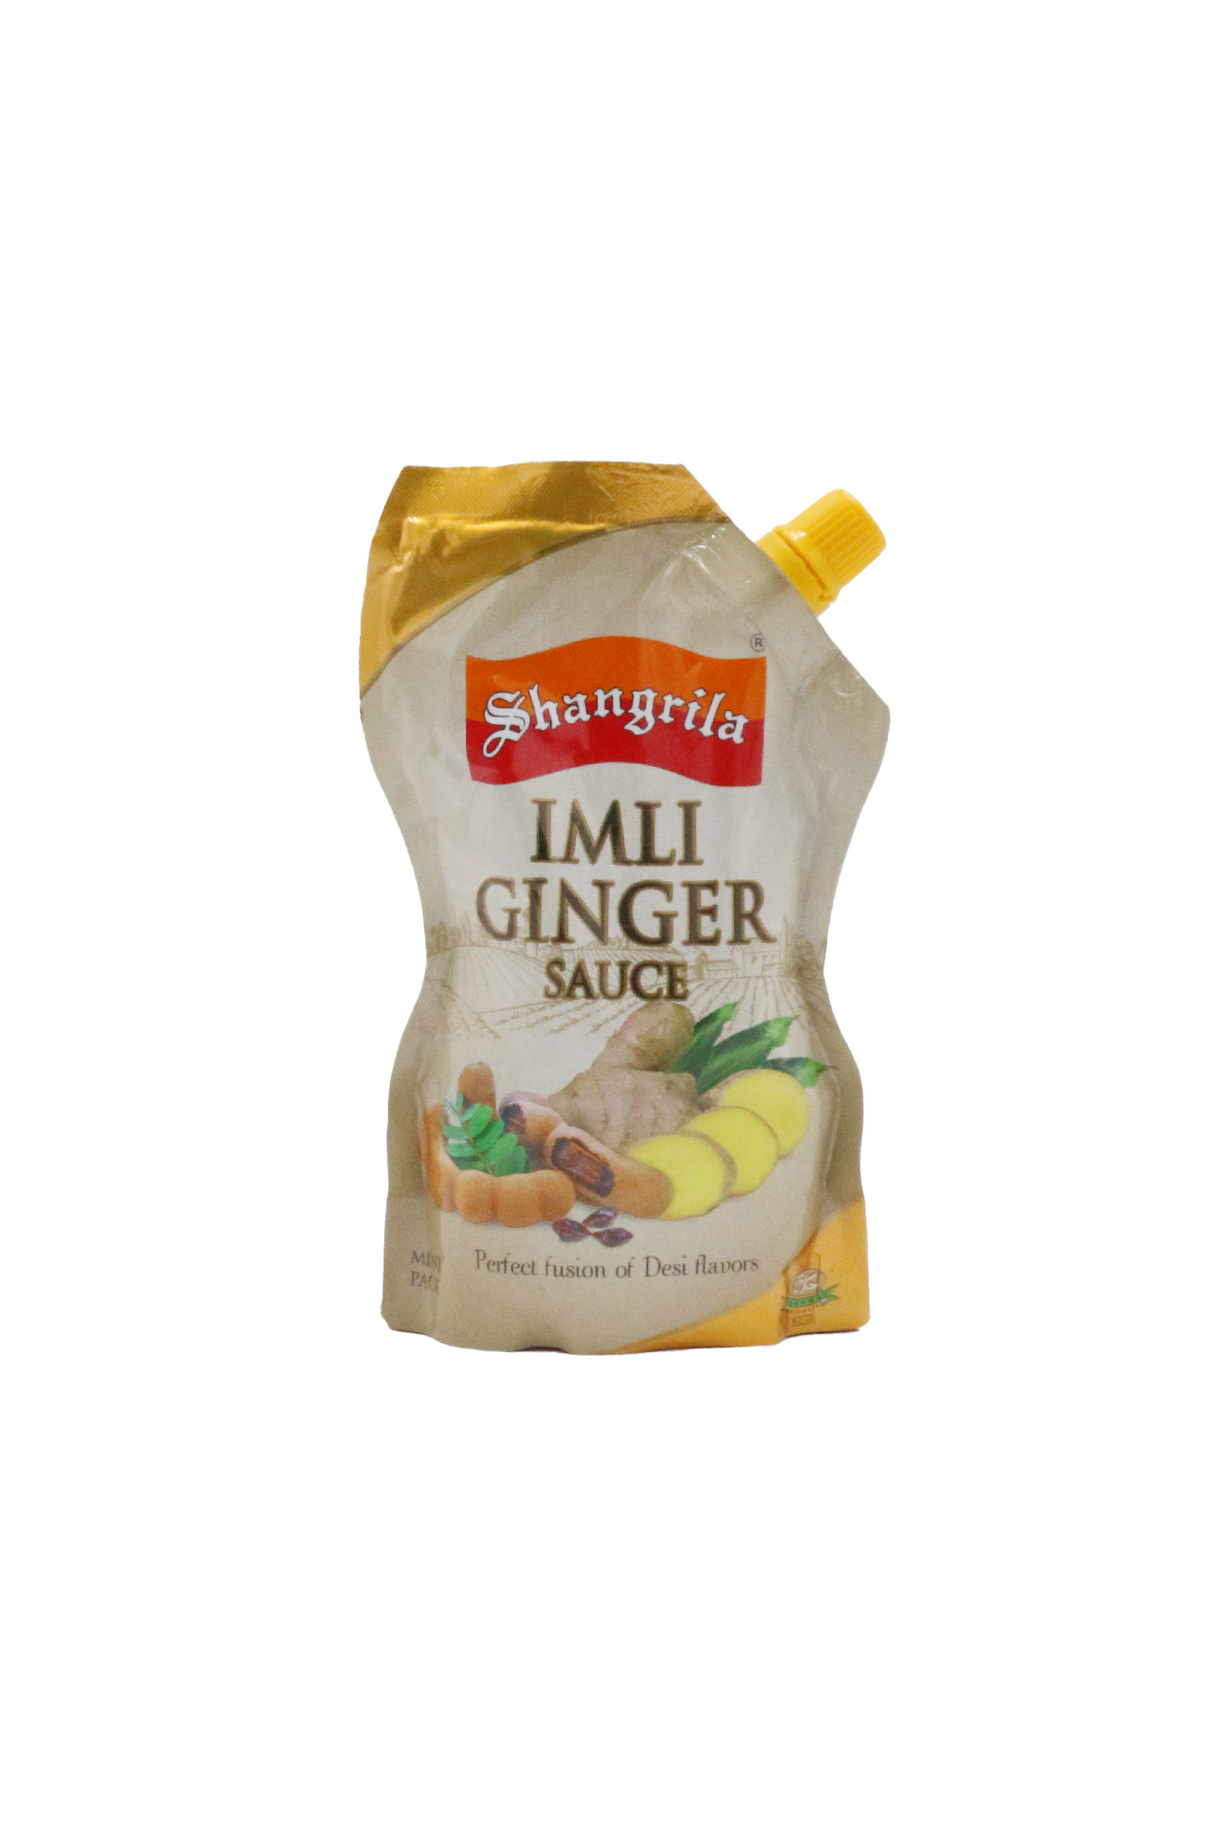 shangrila imli ginger sauce 225g